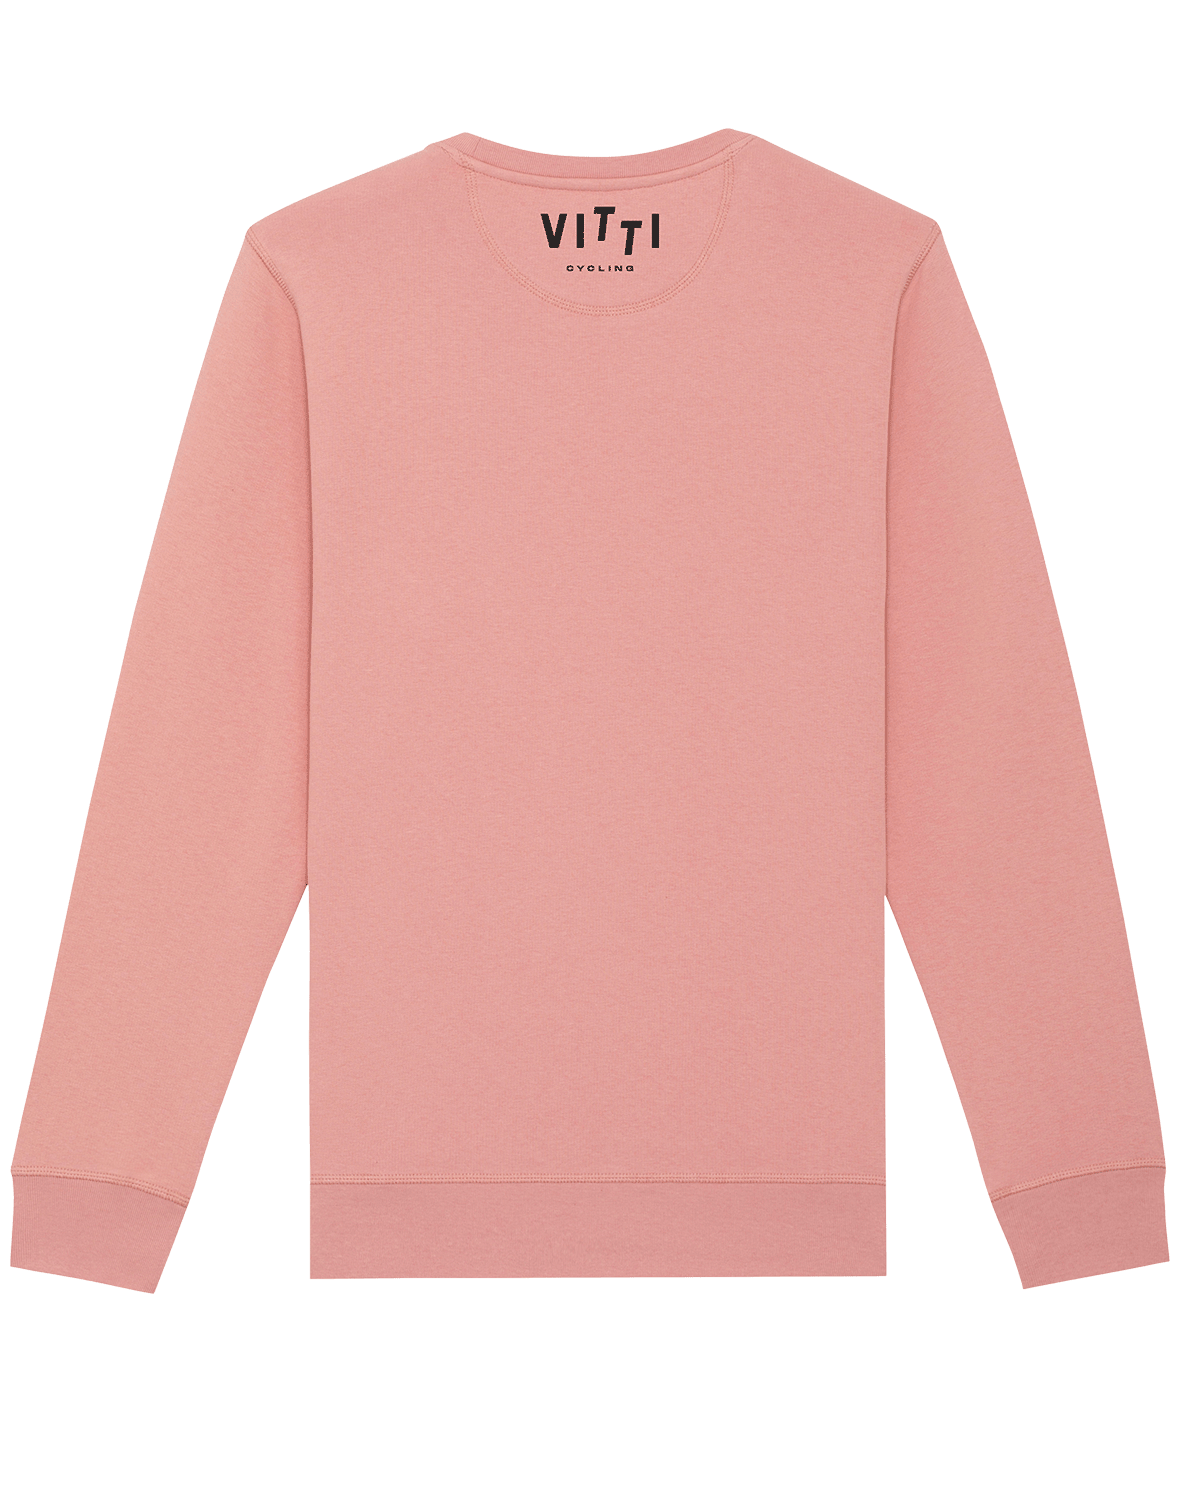 ENZO Pink Sweatshirt - Vitti Cycling